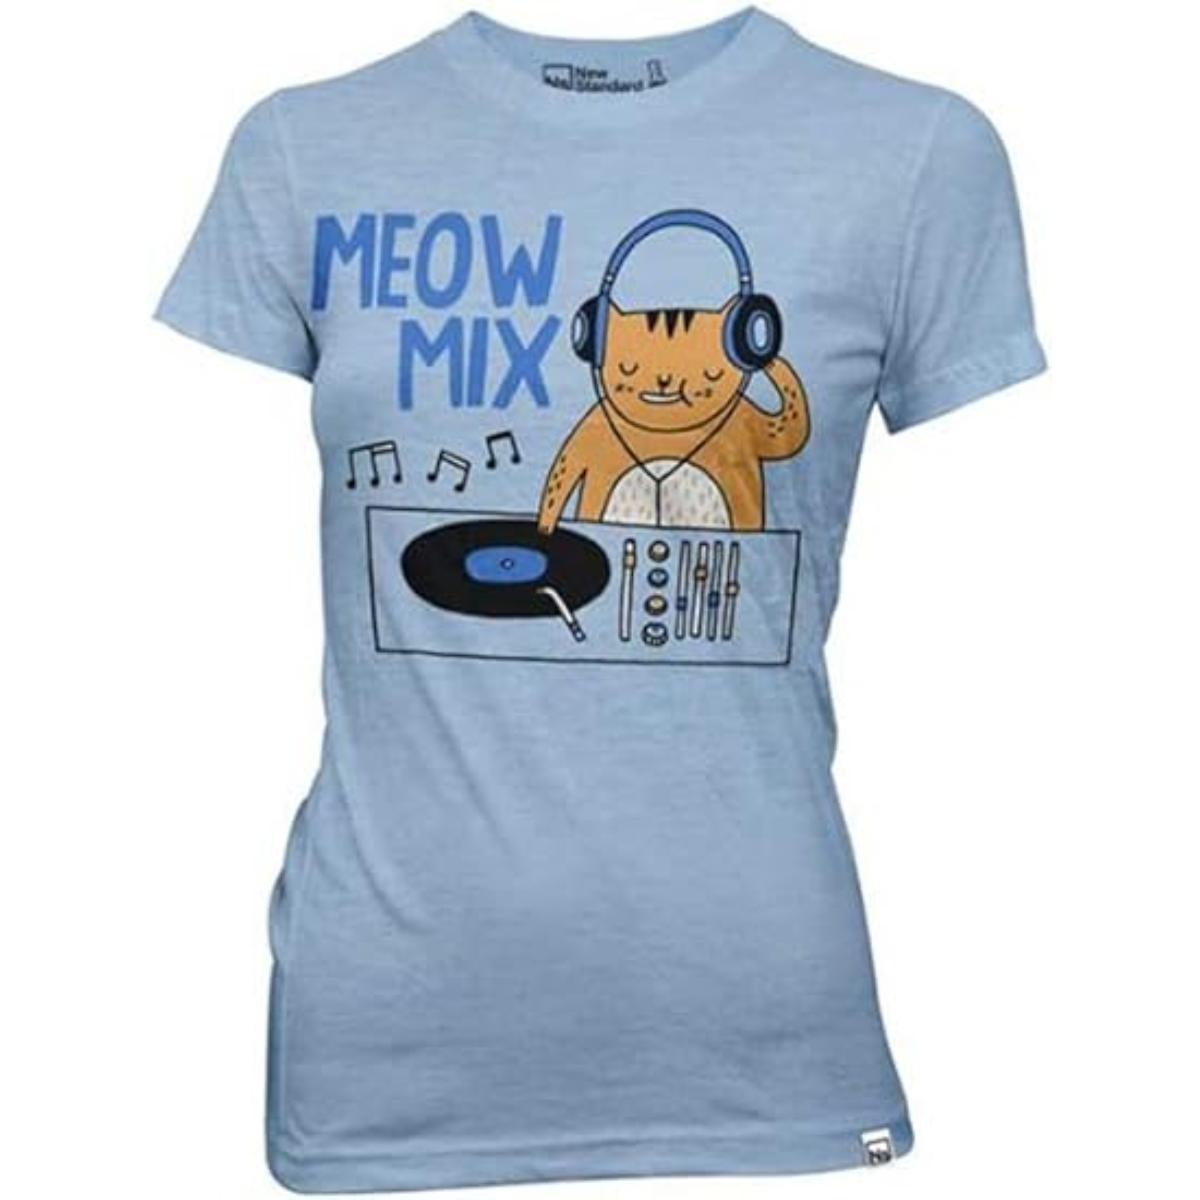 Gemma Correll Meow Mix Light Blue Juniors T-Shirt